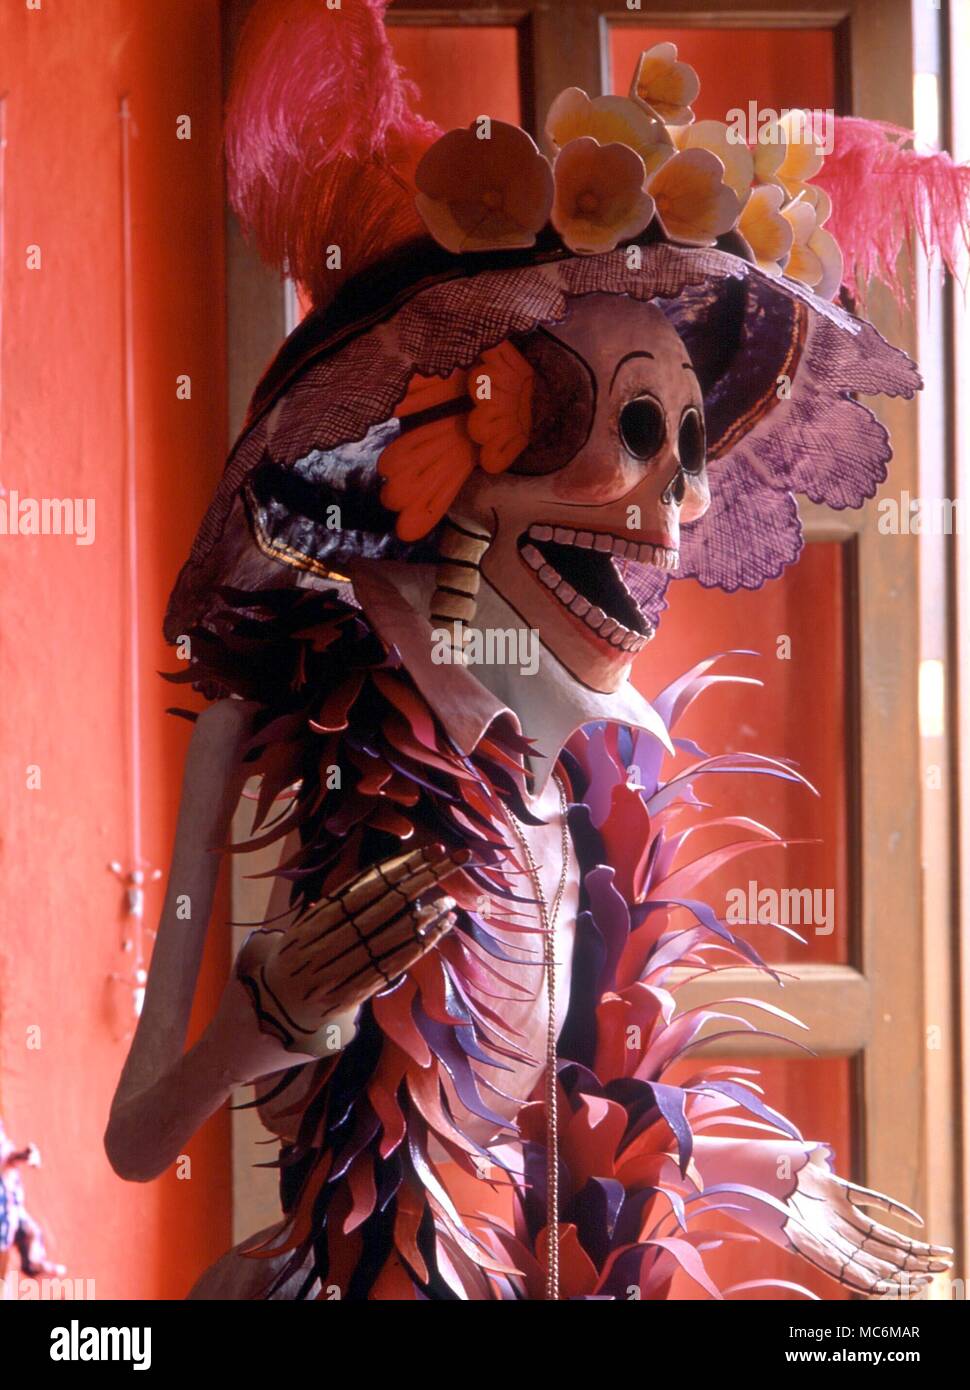 La morte - morte - FESTIVAL DEI MORTI. Il messicano Fiesta de Muertos, a partire dal 1° novembre, comporta una lunga preparazione del grezzo (e anche artistico) immagini di morte in forma di scheletri. Esempi da Oaxaca Foto Stock